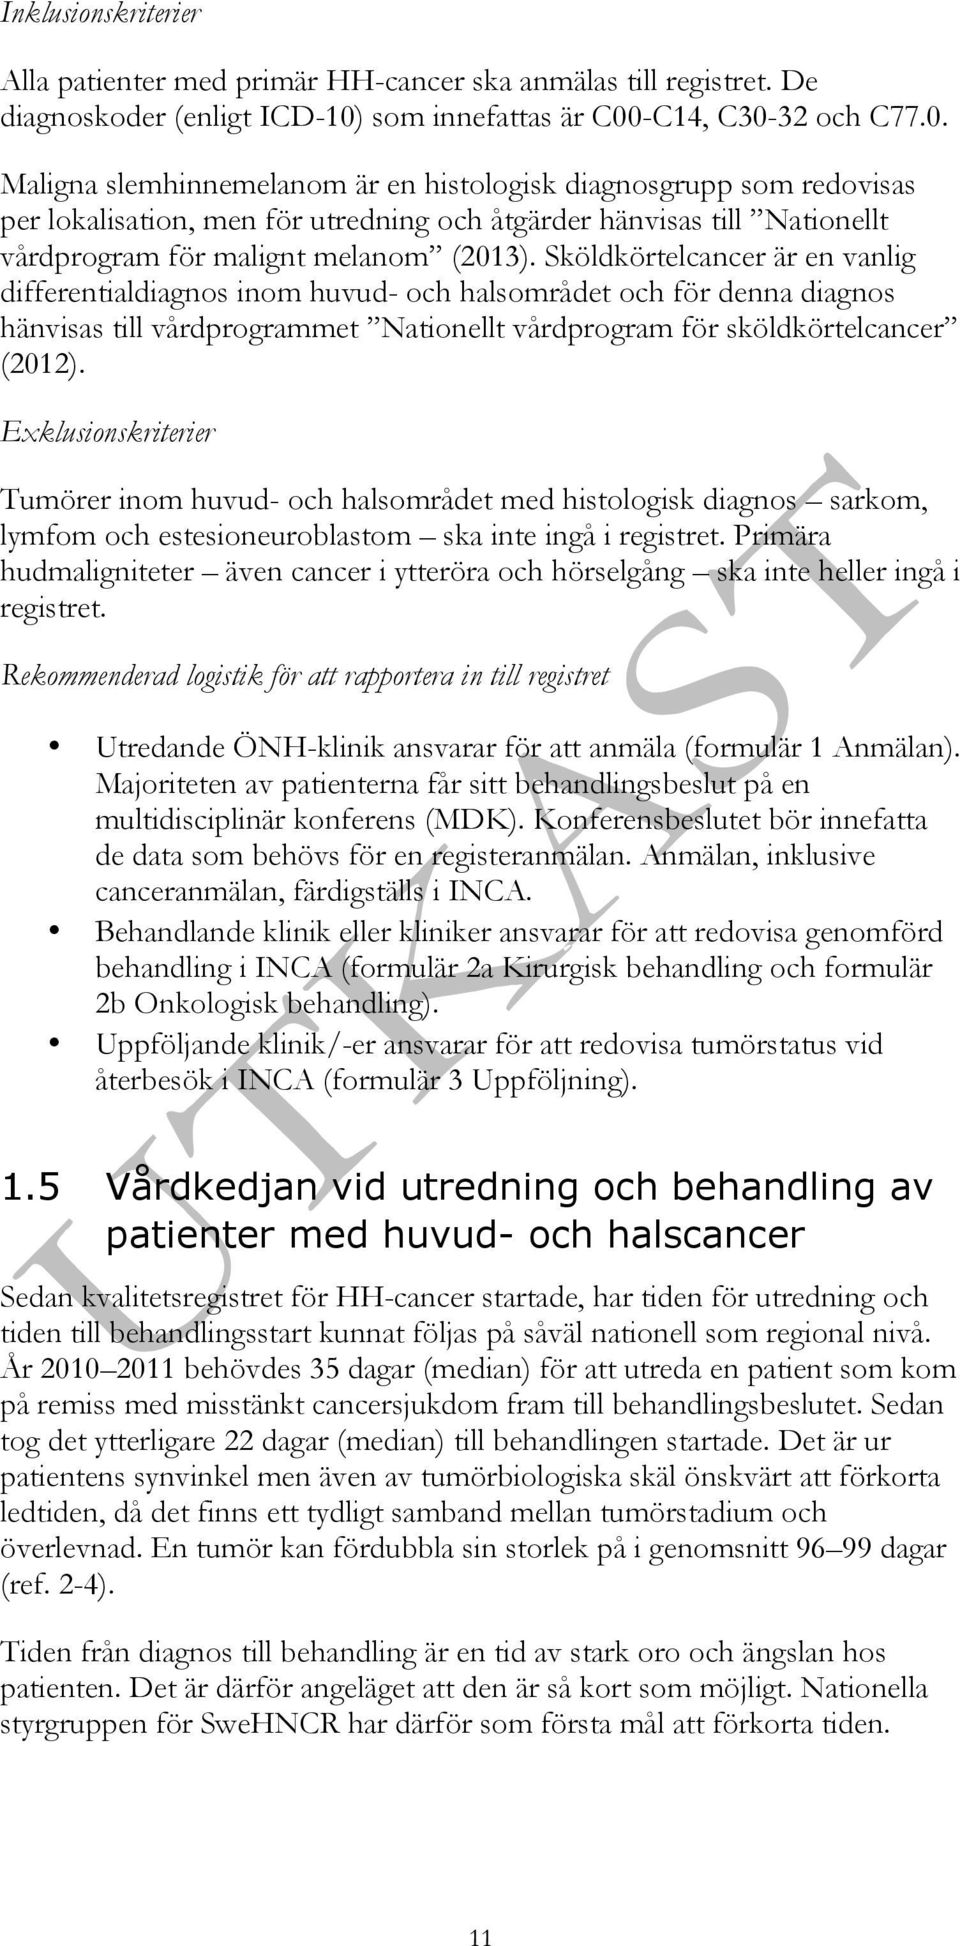 -C14, C30-32 och C77.0. Maligna slemhinnemelanom är en histologisk diagnosgrupp som redovisas per lokalisation, men för utredning och åtgärder hänvisas till Nationellt vårdprogram för malignt melanom (2013).